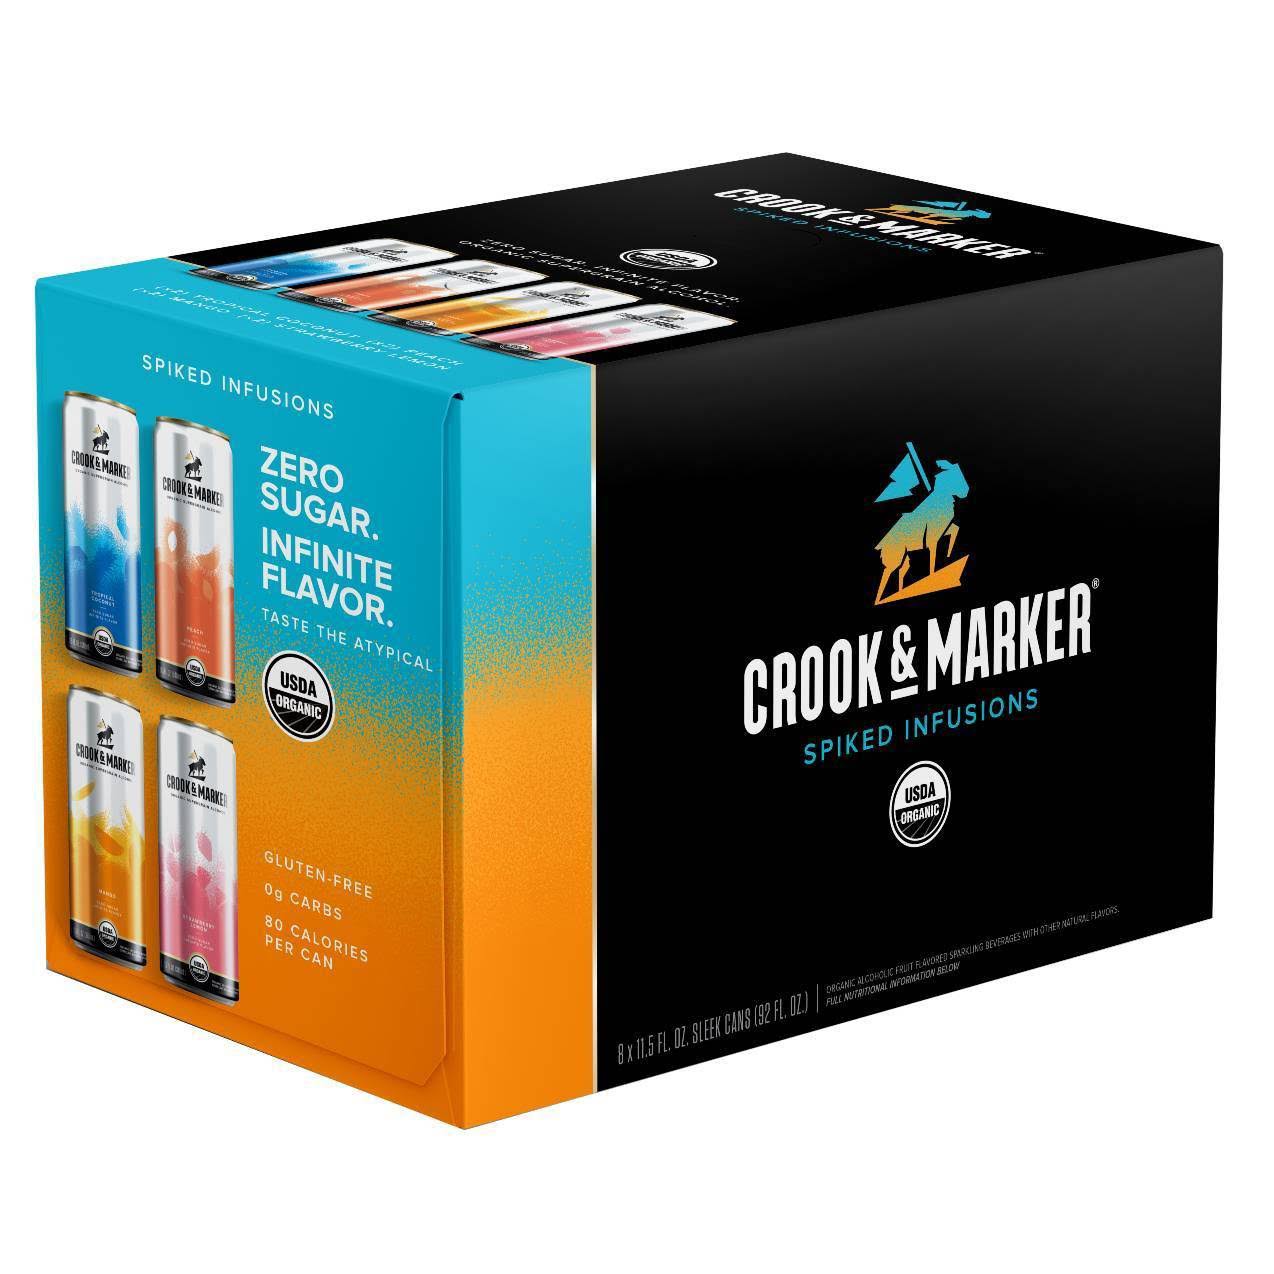 Crook & Marker Beer, Spike & Sparkling, Variety Pack - 8 pack, 11.5 fl oz cans